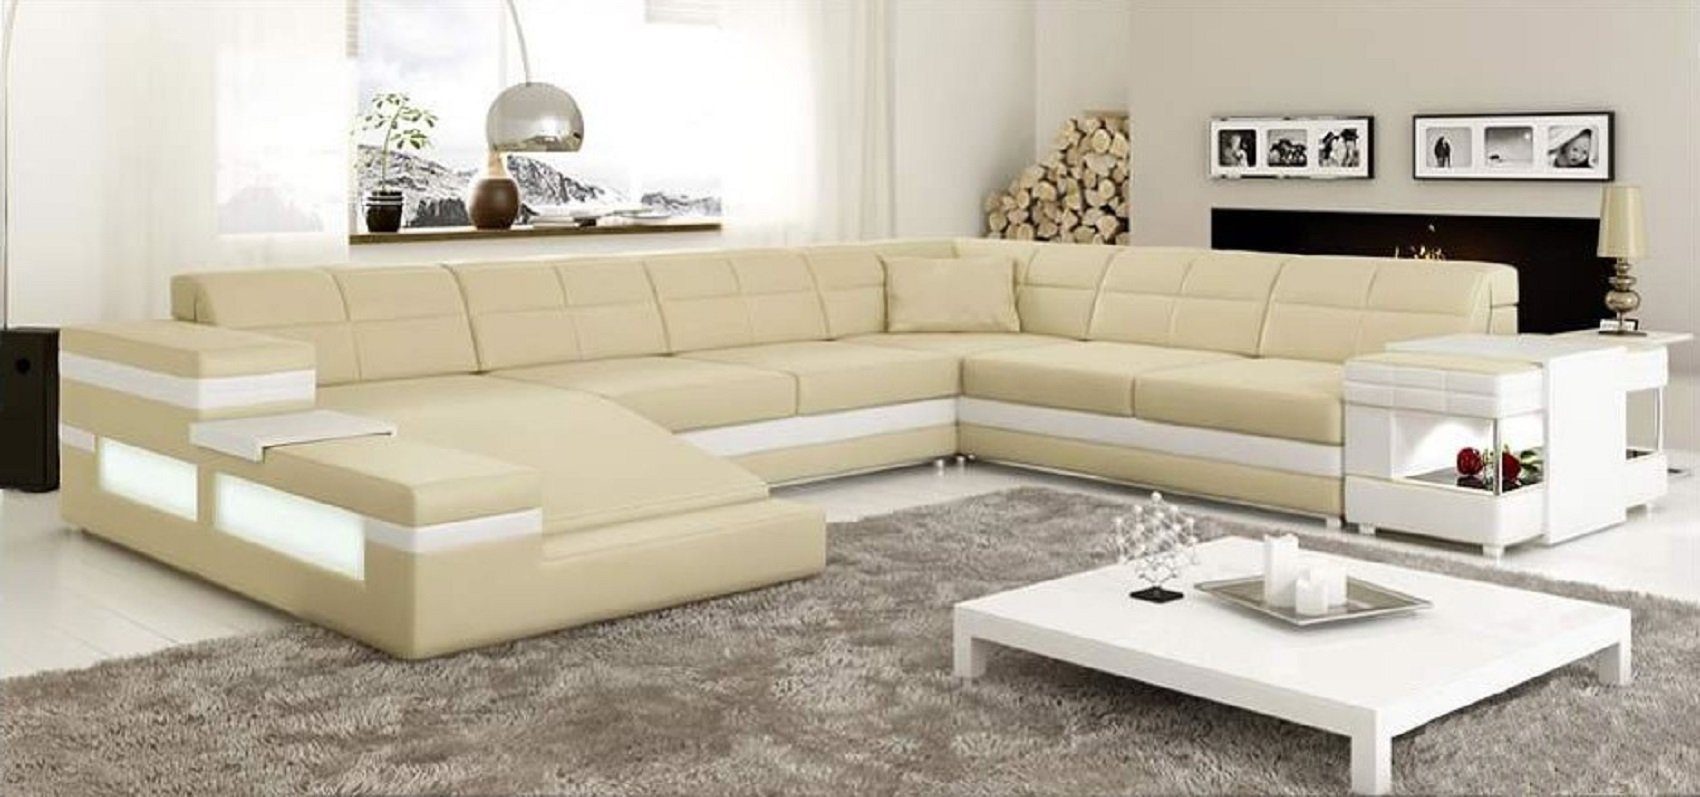 Couch JVmoebel Polster Ecksofa Ecksofa Eckgarnitur Beige/Weiß Made Design Ledersofa in Sofa Europe Sofa,